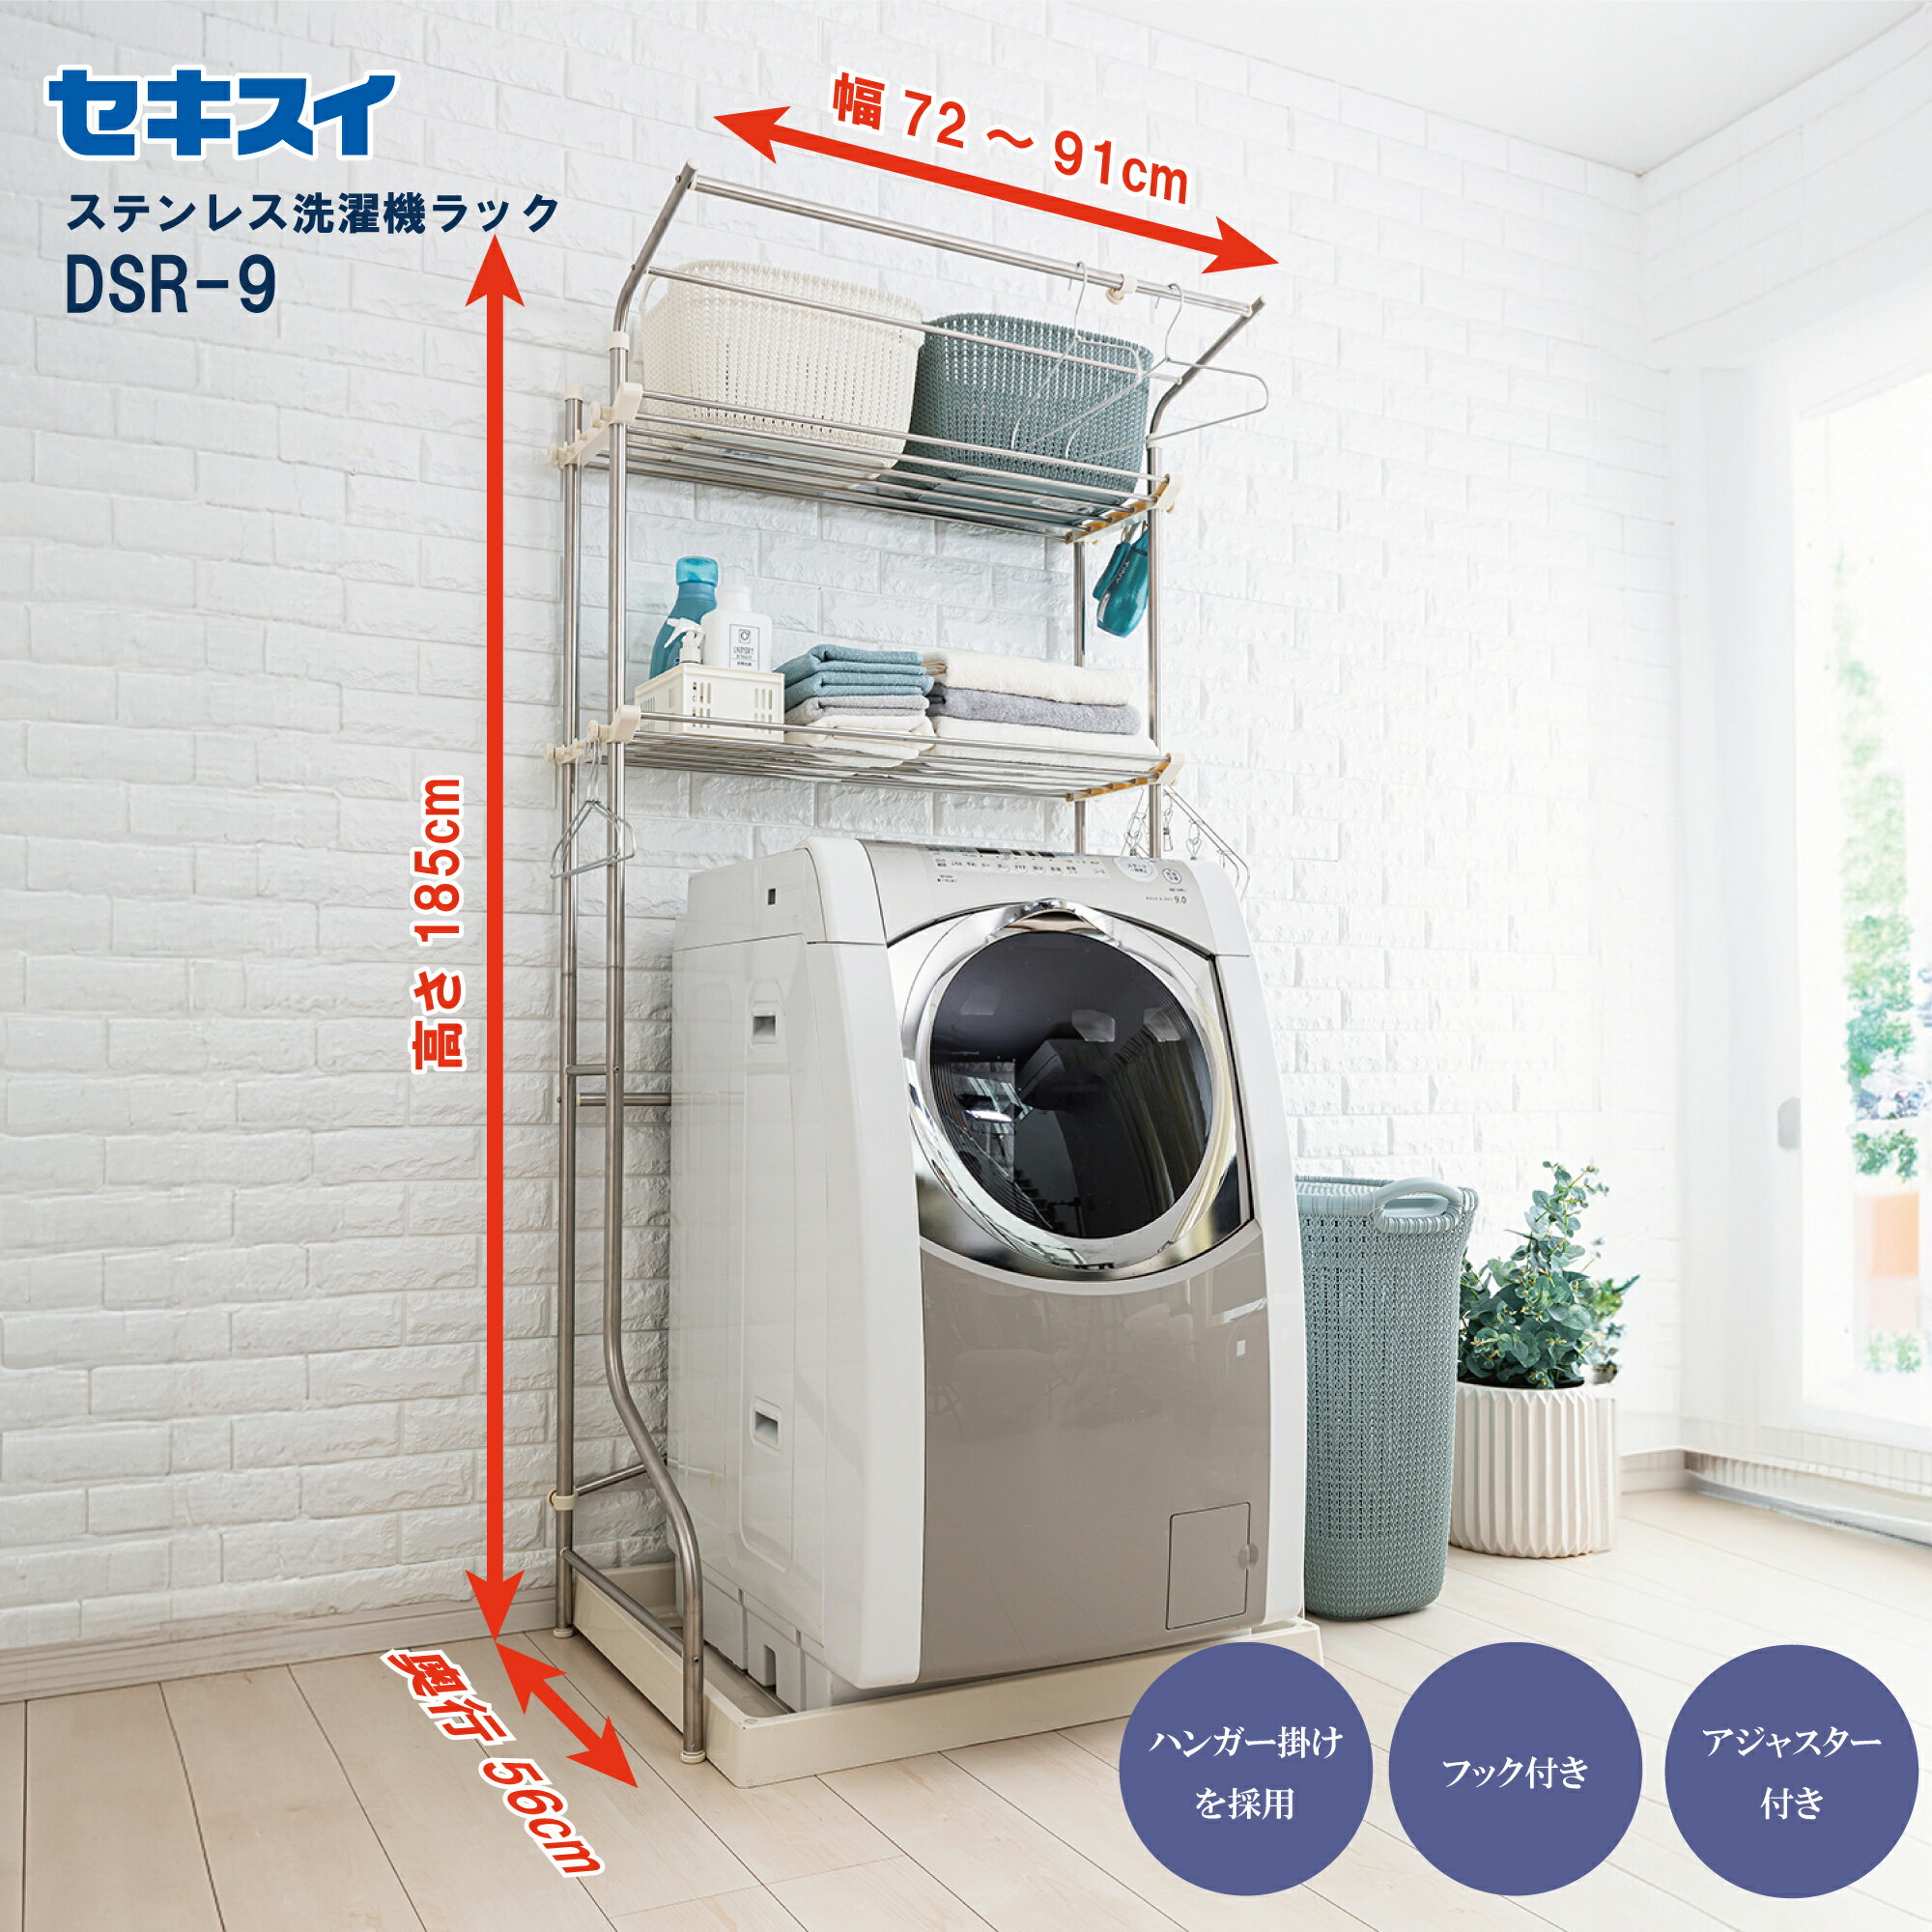 セキスイステンレス洗濯機ラック DSR-9